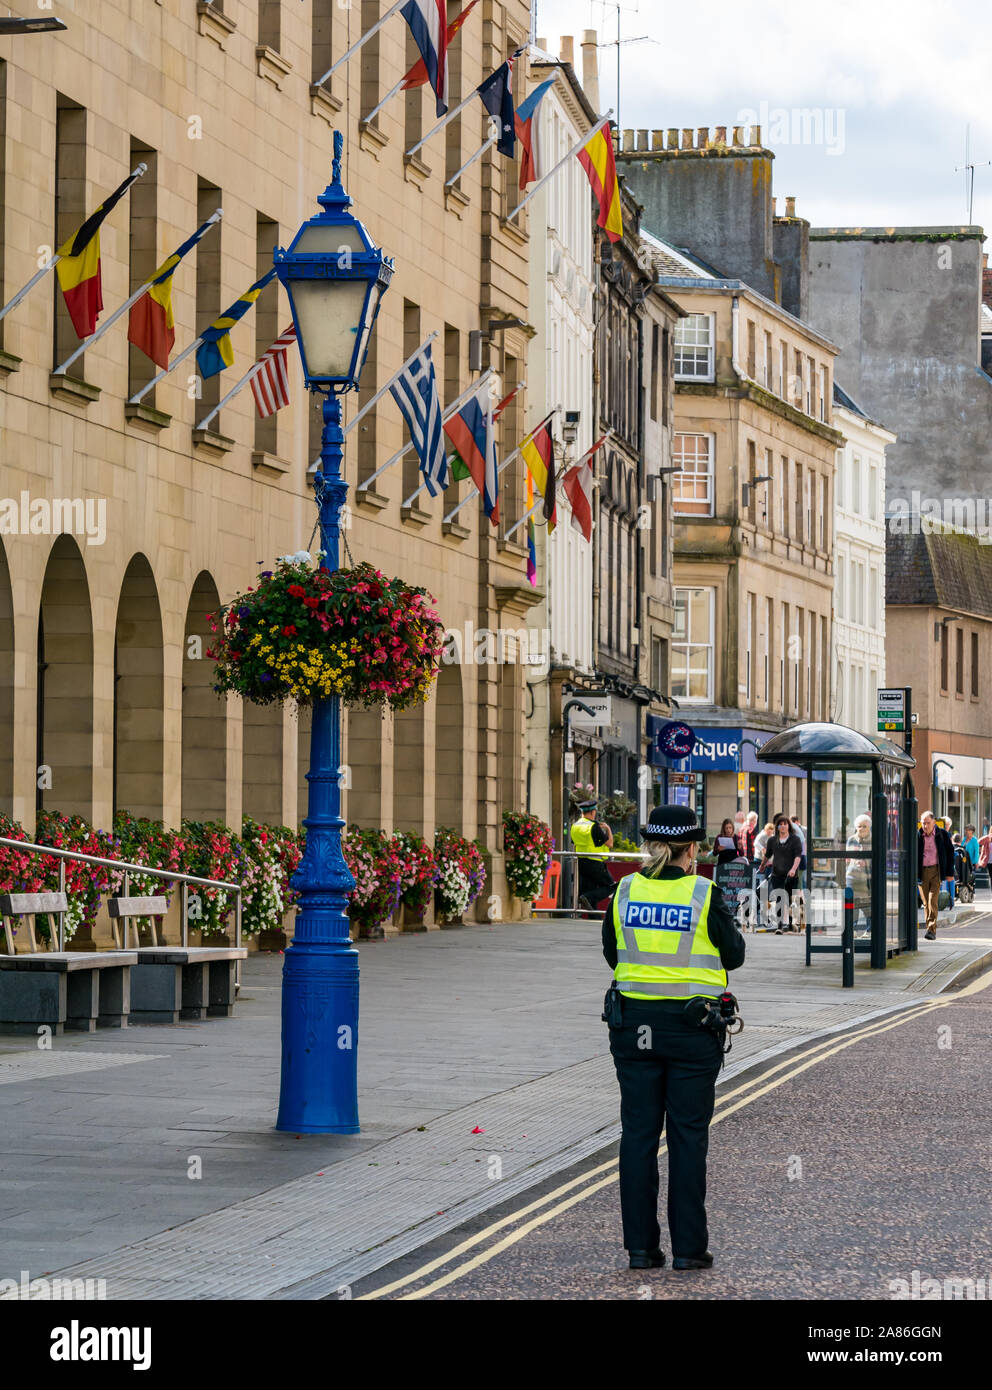 La policía de alta visibilidad chalecos amarillos en High Street antes de marzo AUOB, la ciudad de Perth, en Escocia, Reino Unido Foto de stock